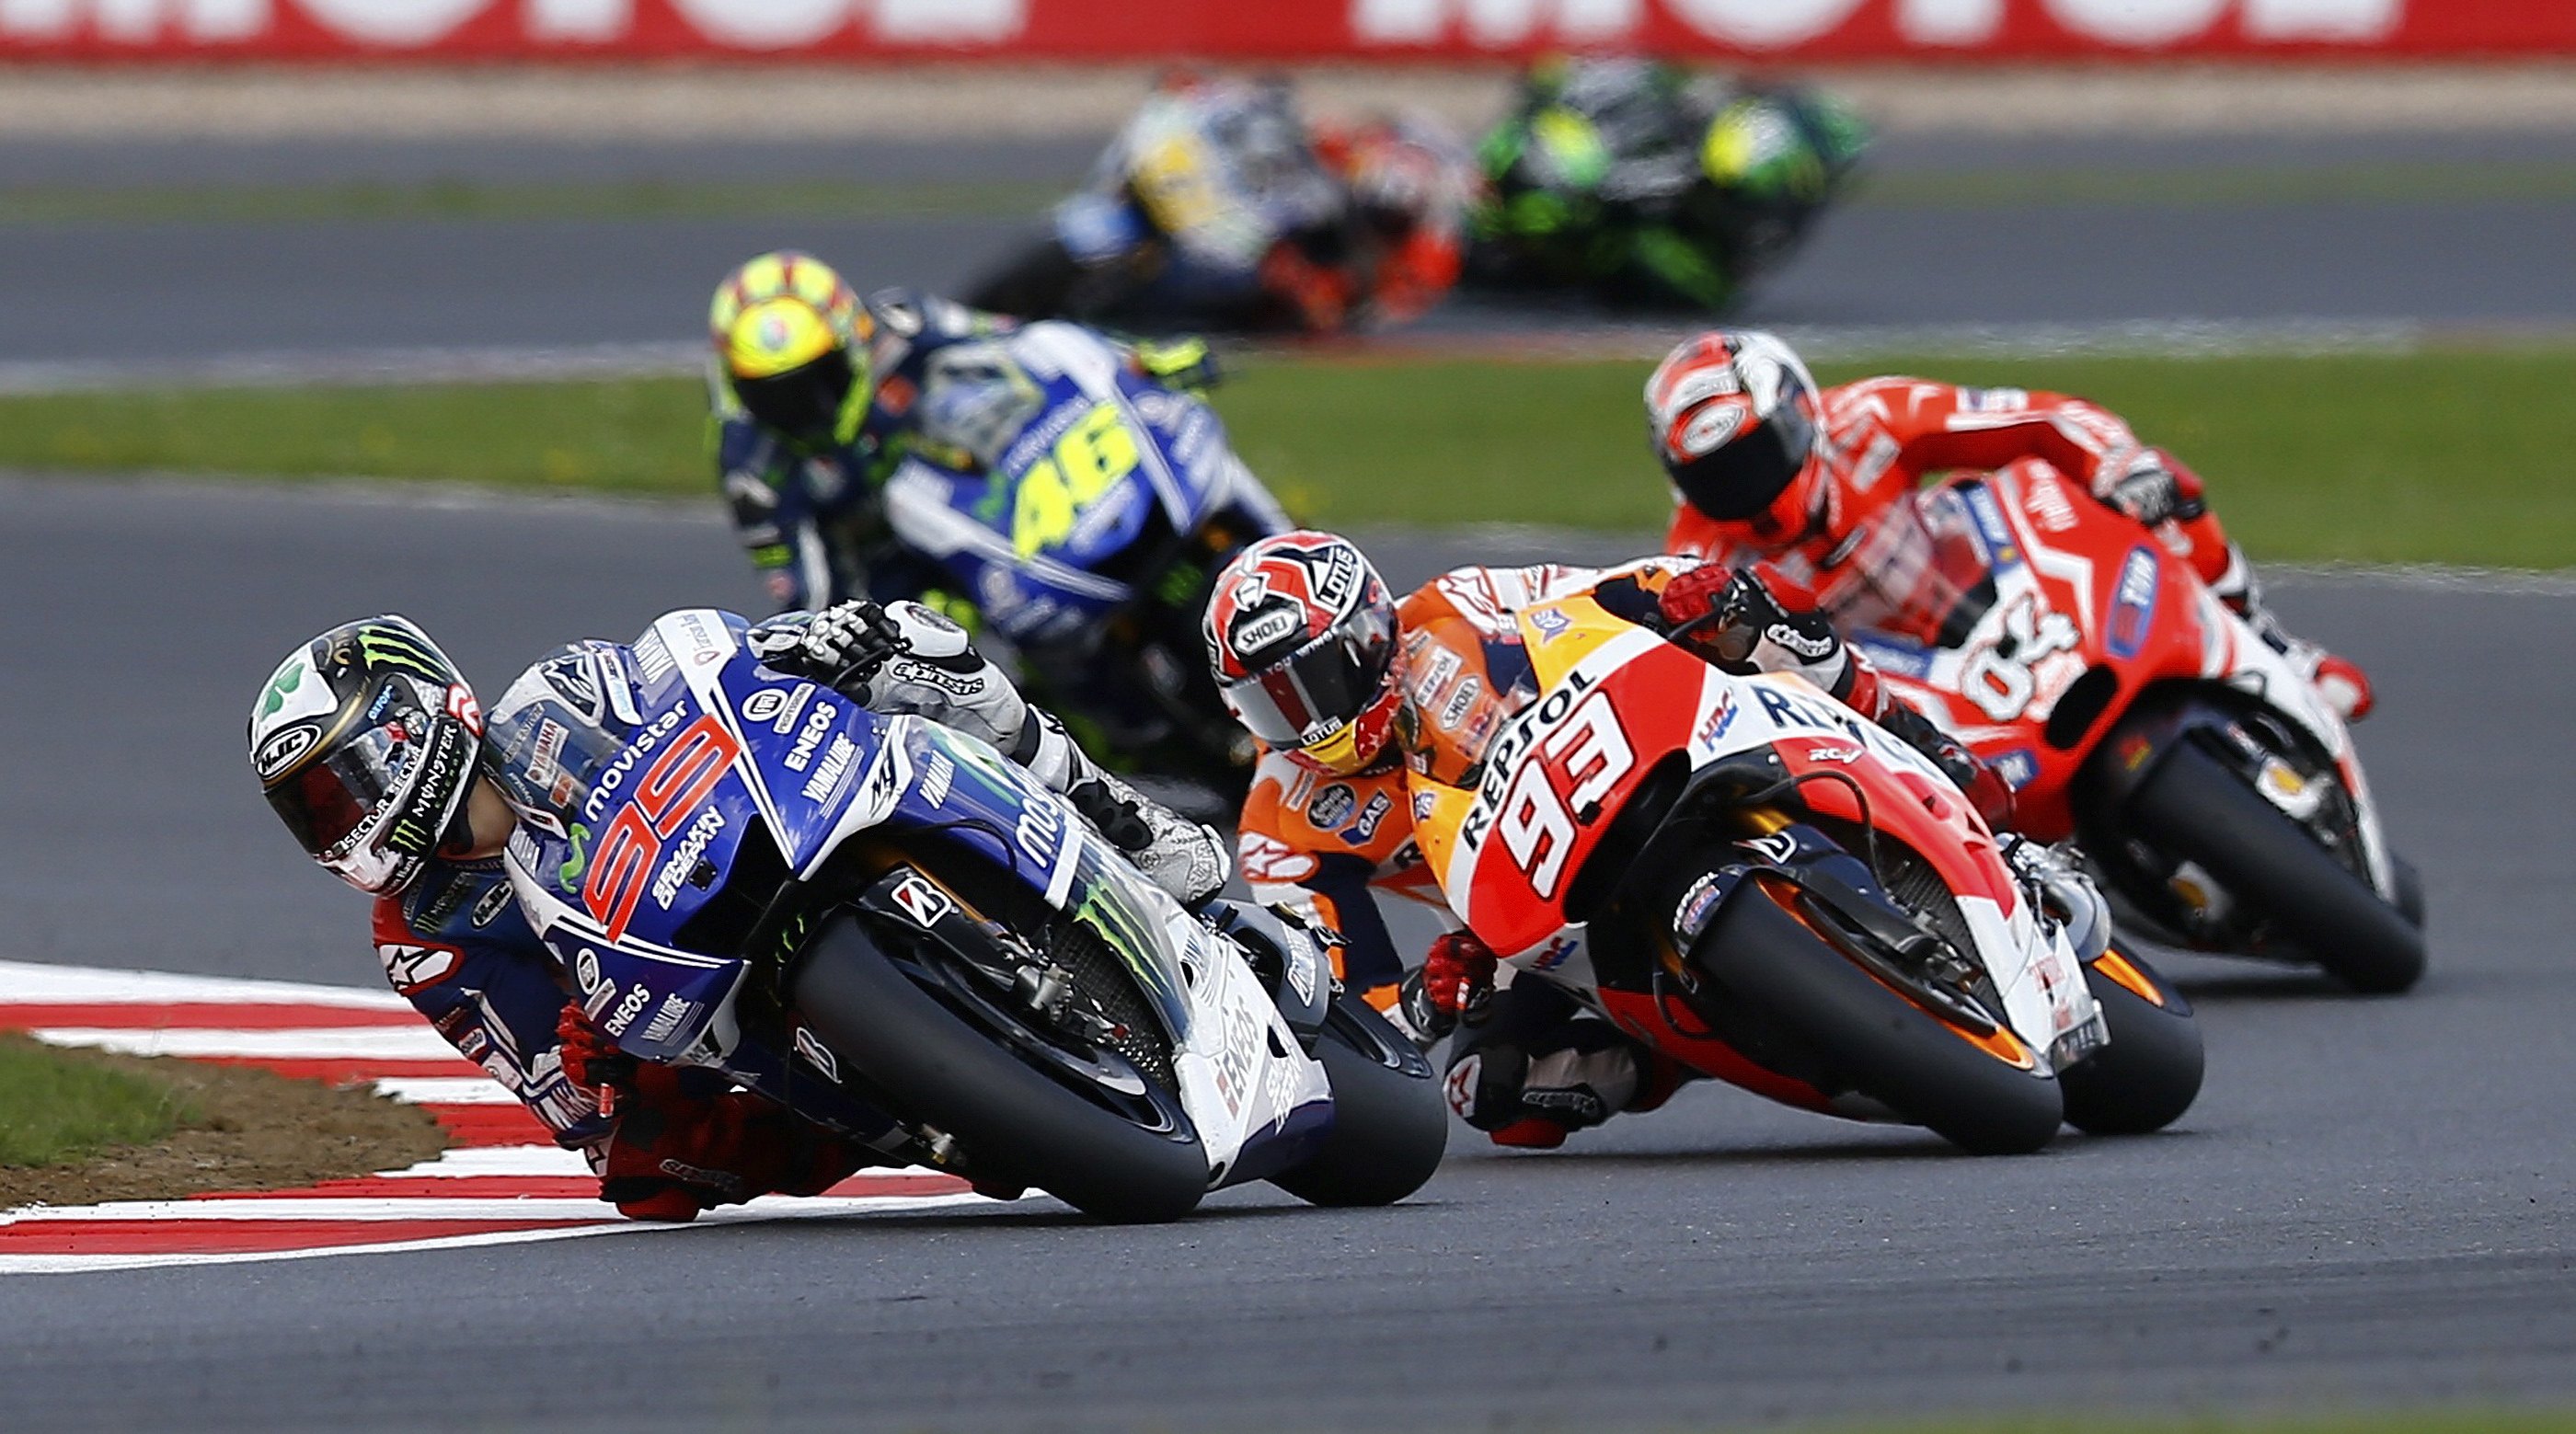 MotoGP – Silverstone 2014: Επιστροφή στις νίκες για τον M. Marquez